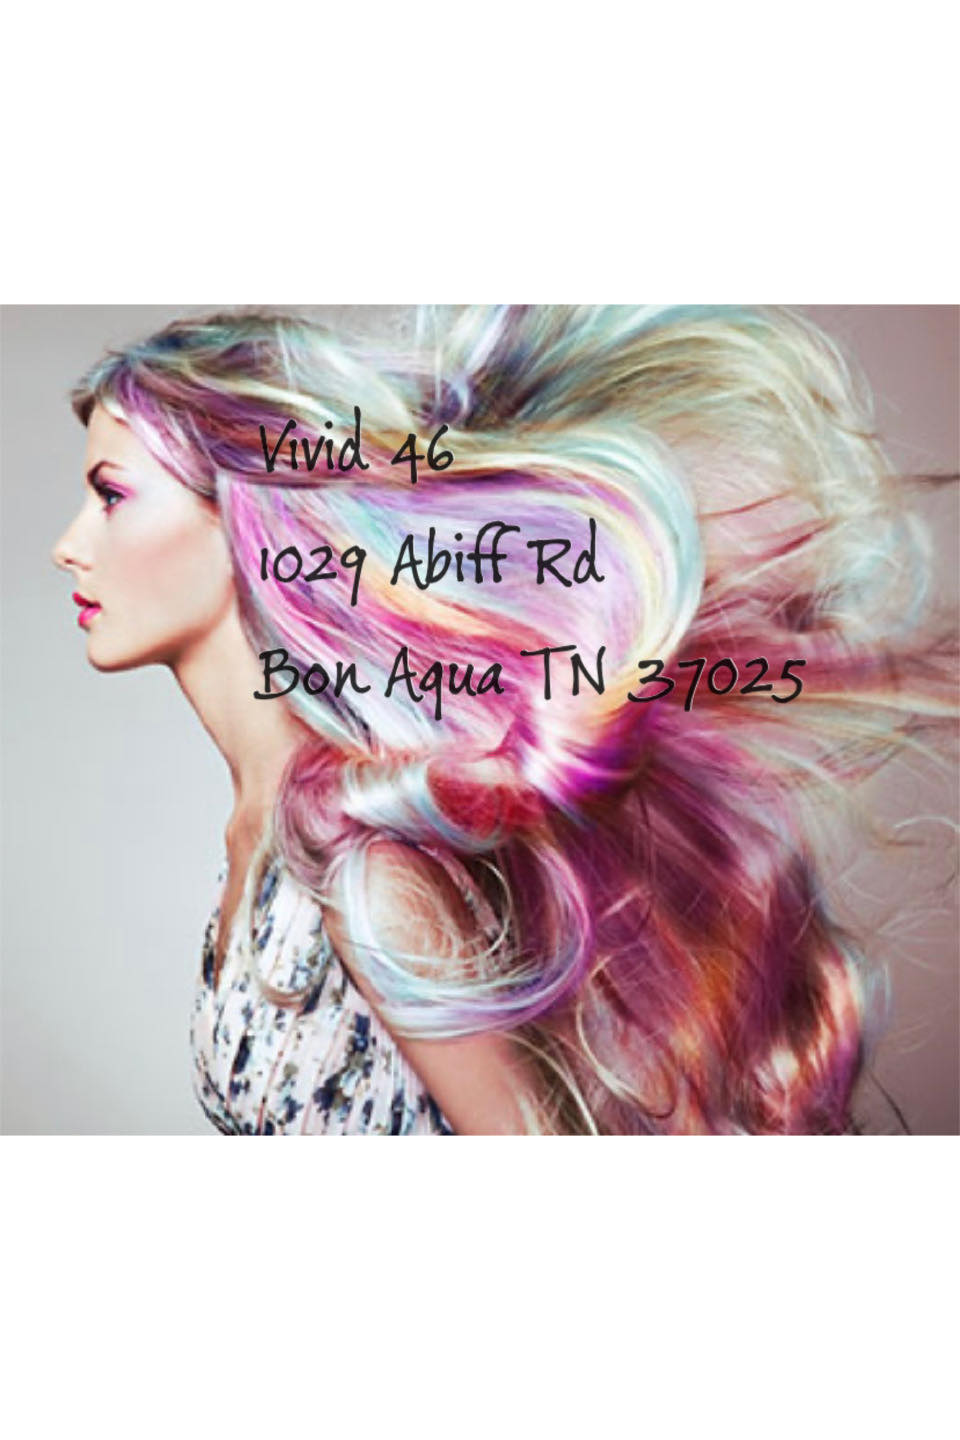 Vivid Hair 1029 Abiff Rd, Bon Aqua Tennessee 37025